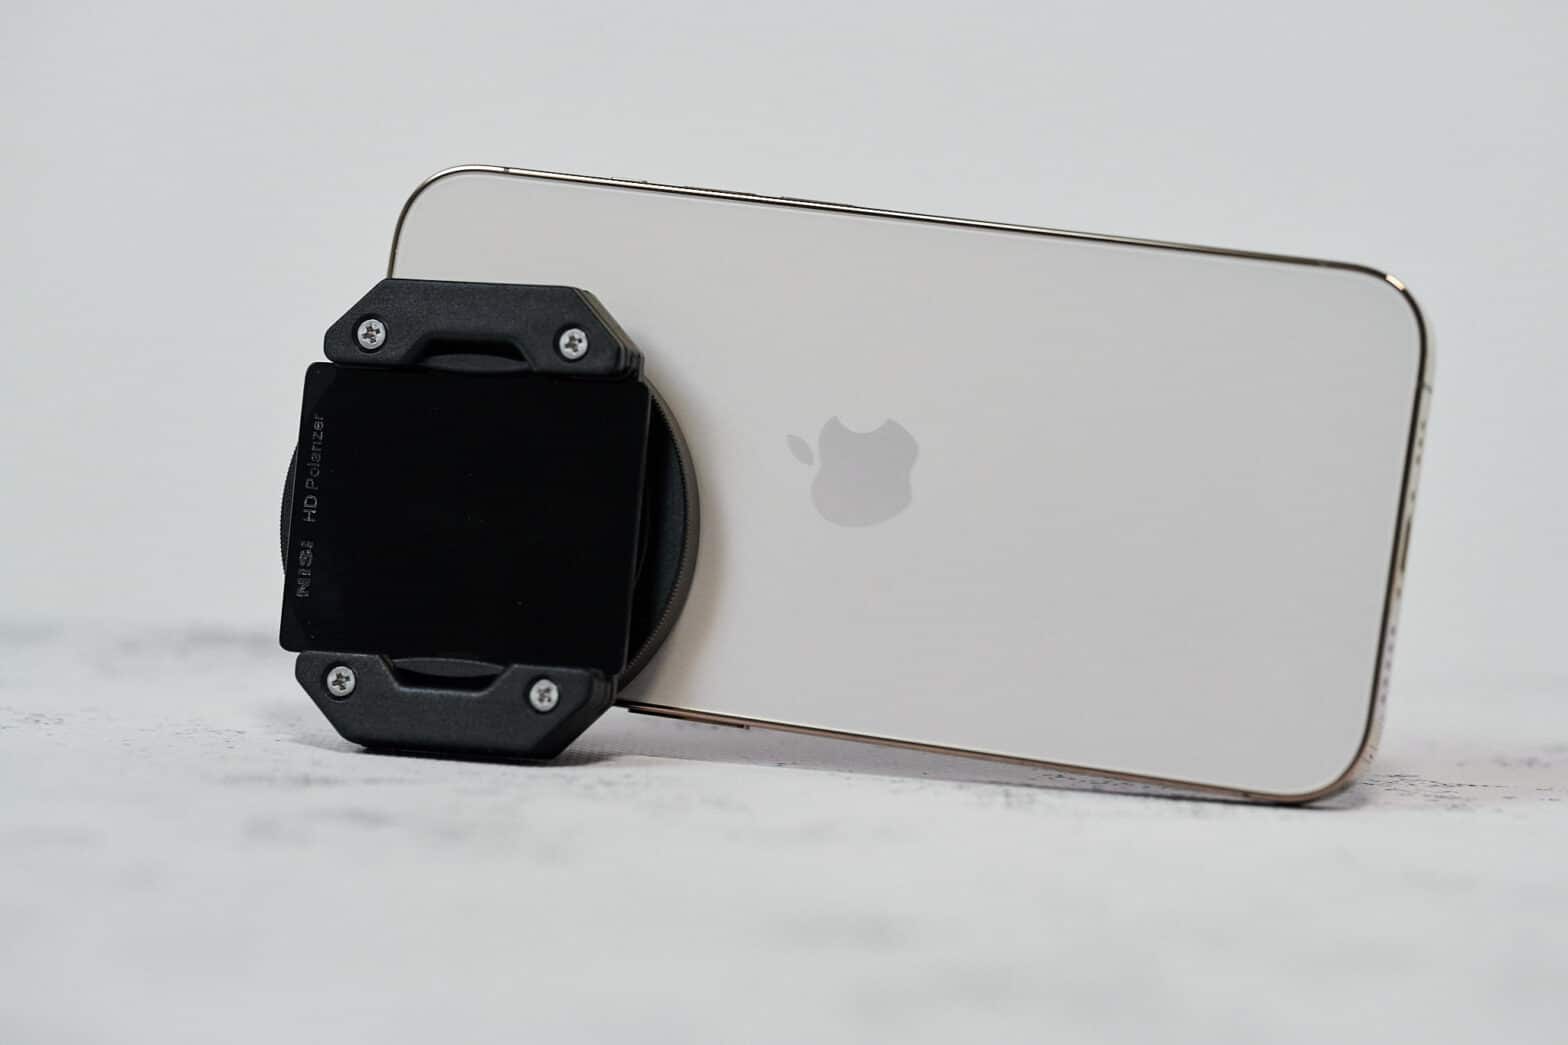 iPhone et AirPods/Max : des idées d'accessoires pour accompagner son cadeau  de Noël